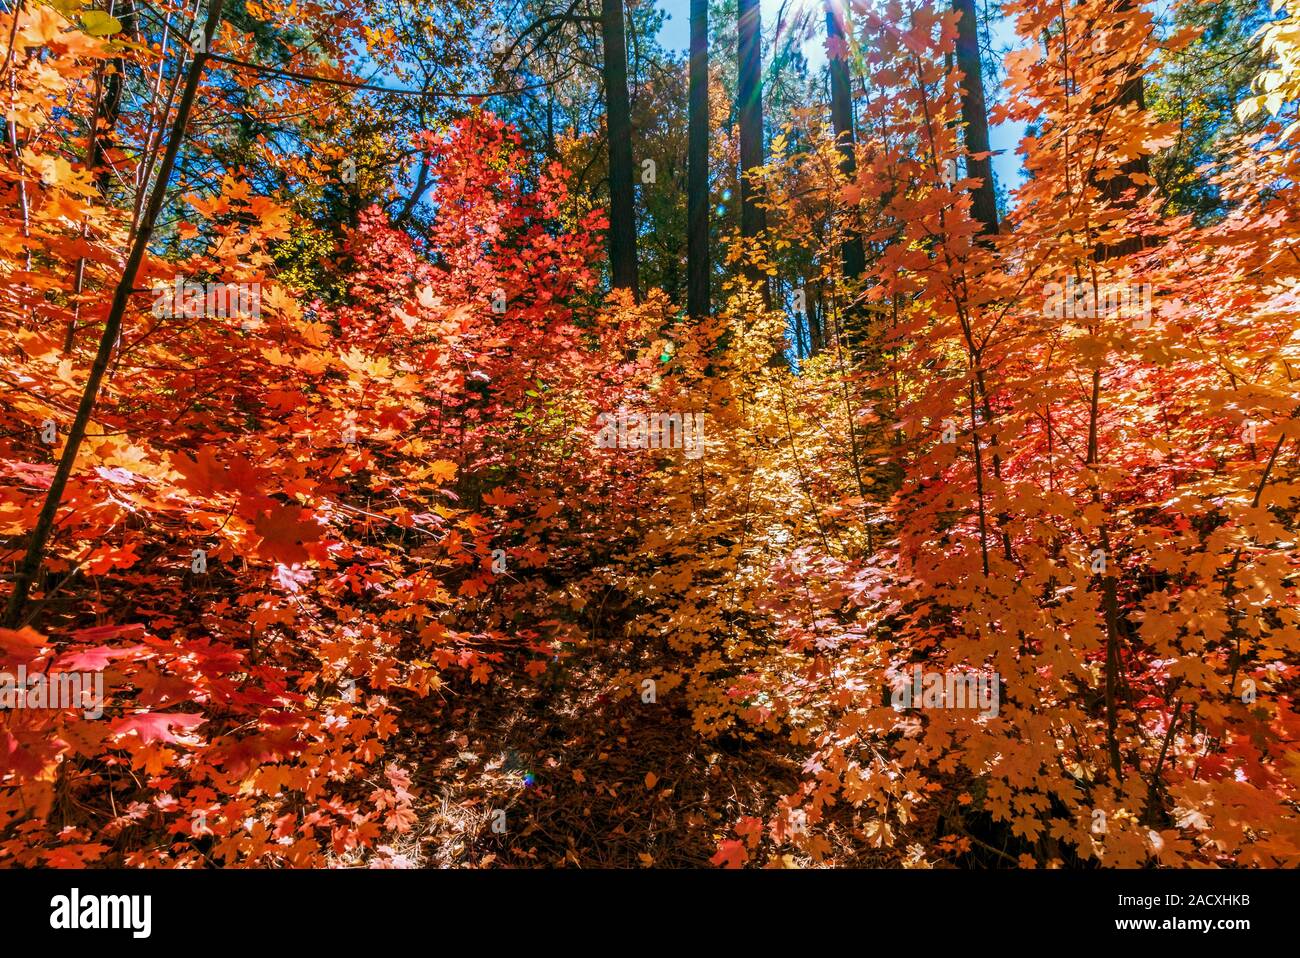 La couleur des feuilles d'automne Vibrabt à Oak Creek Canyon Arizona Sedona 2019 Banque D'Images